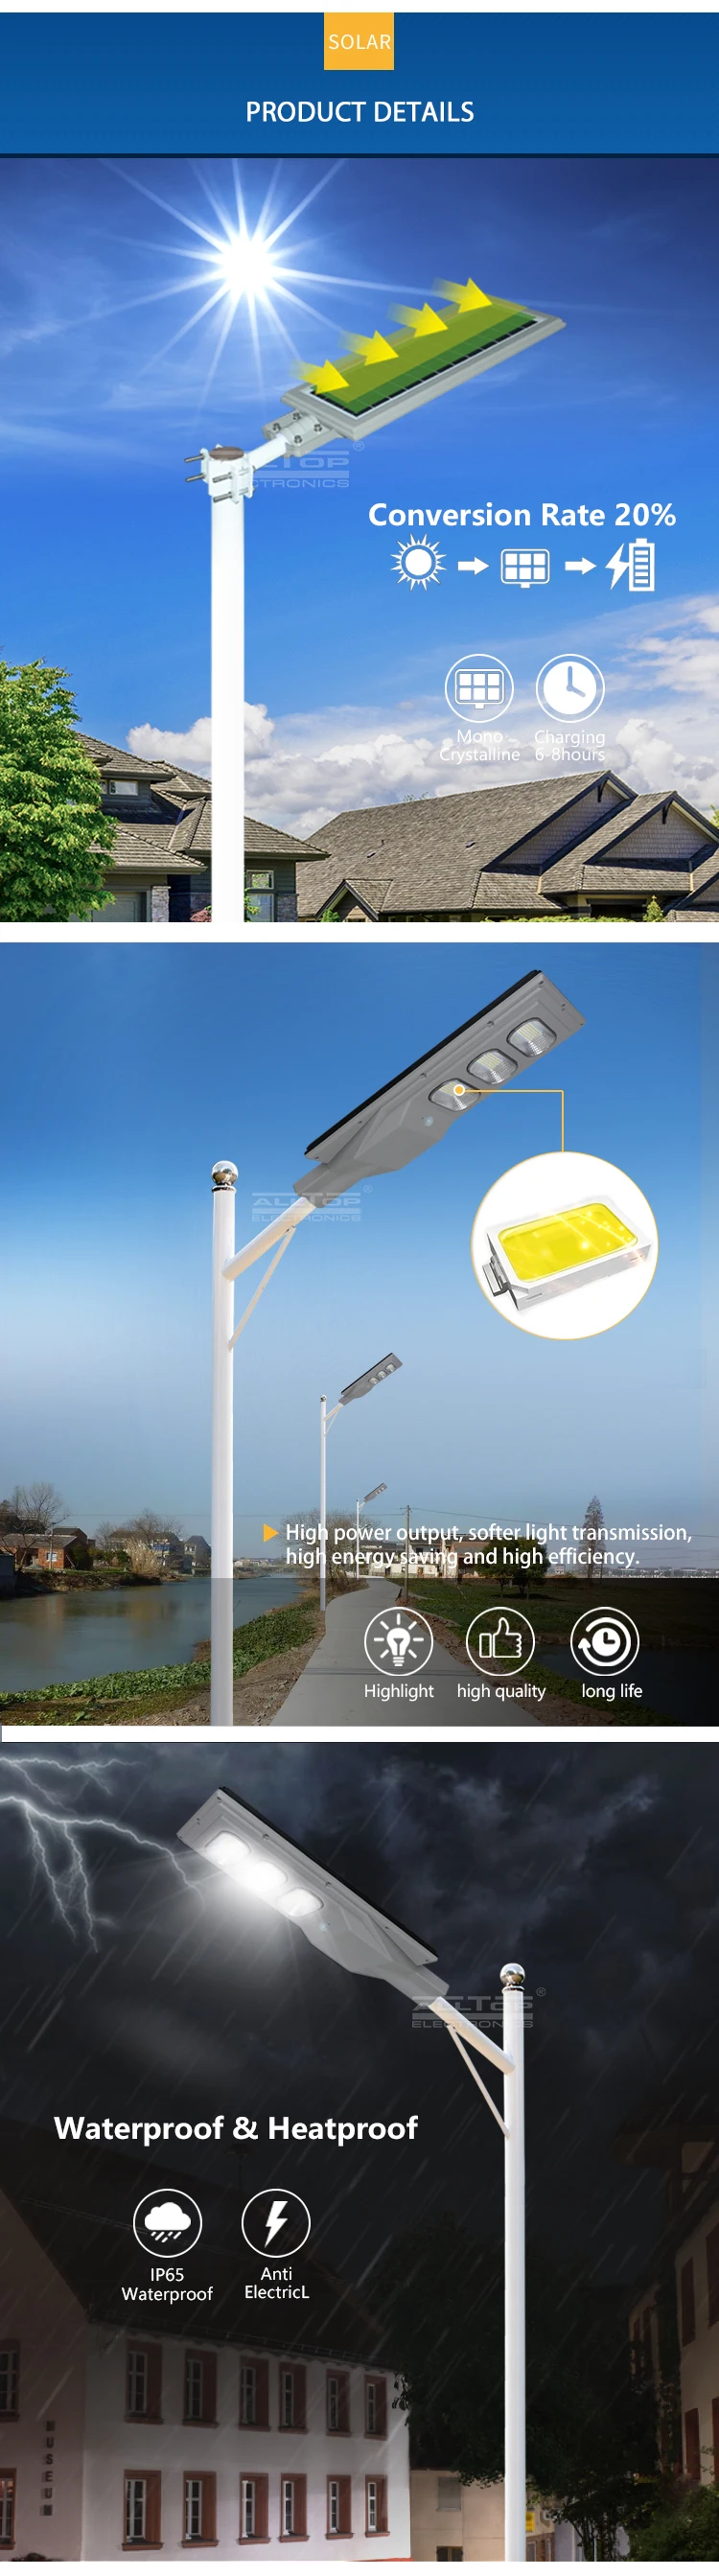 ALLTOP Best Sale Solar Charging Controller Waterproof IP65 30w 60w 90w 120w 150w All In One Solar LED Street Light